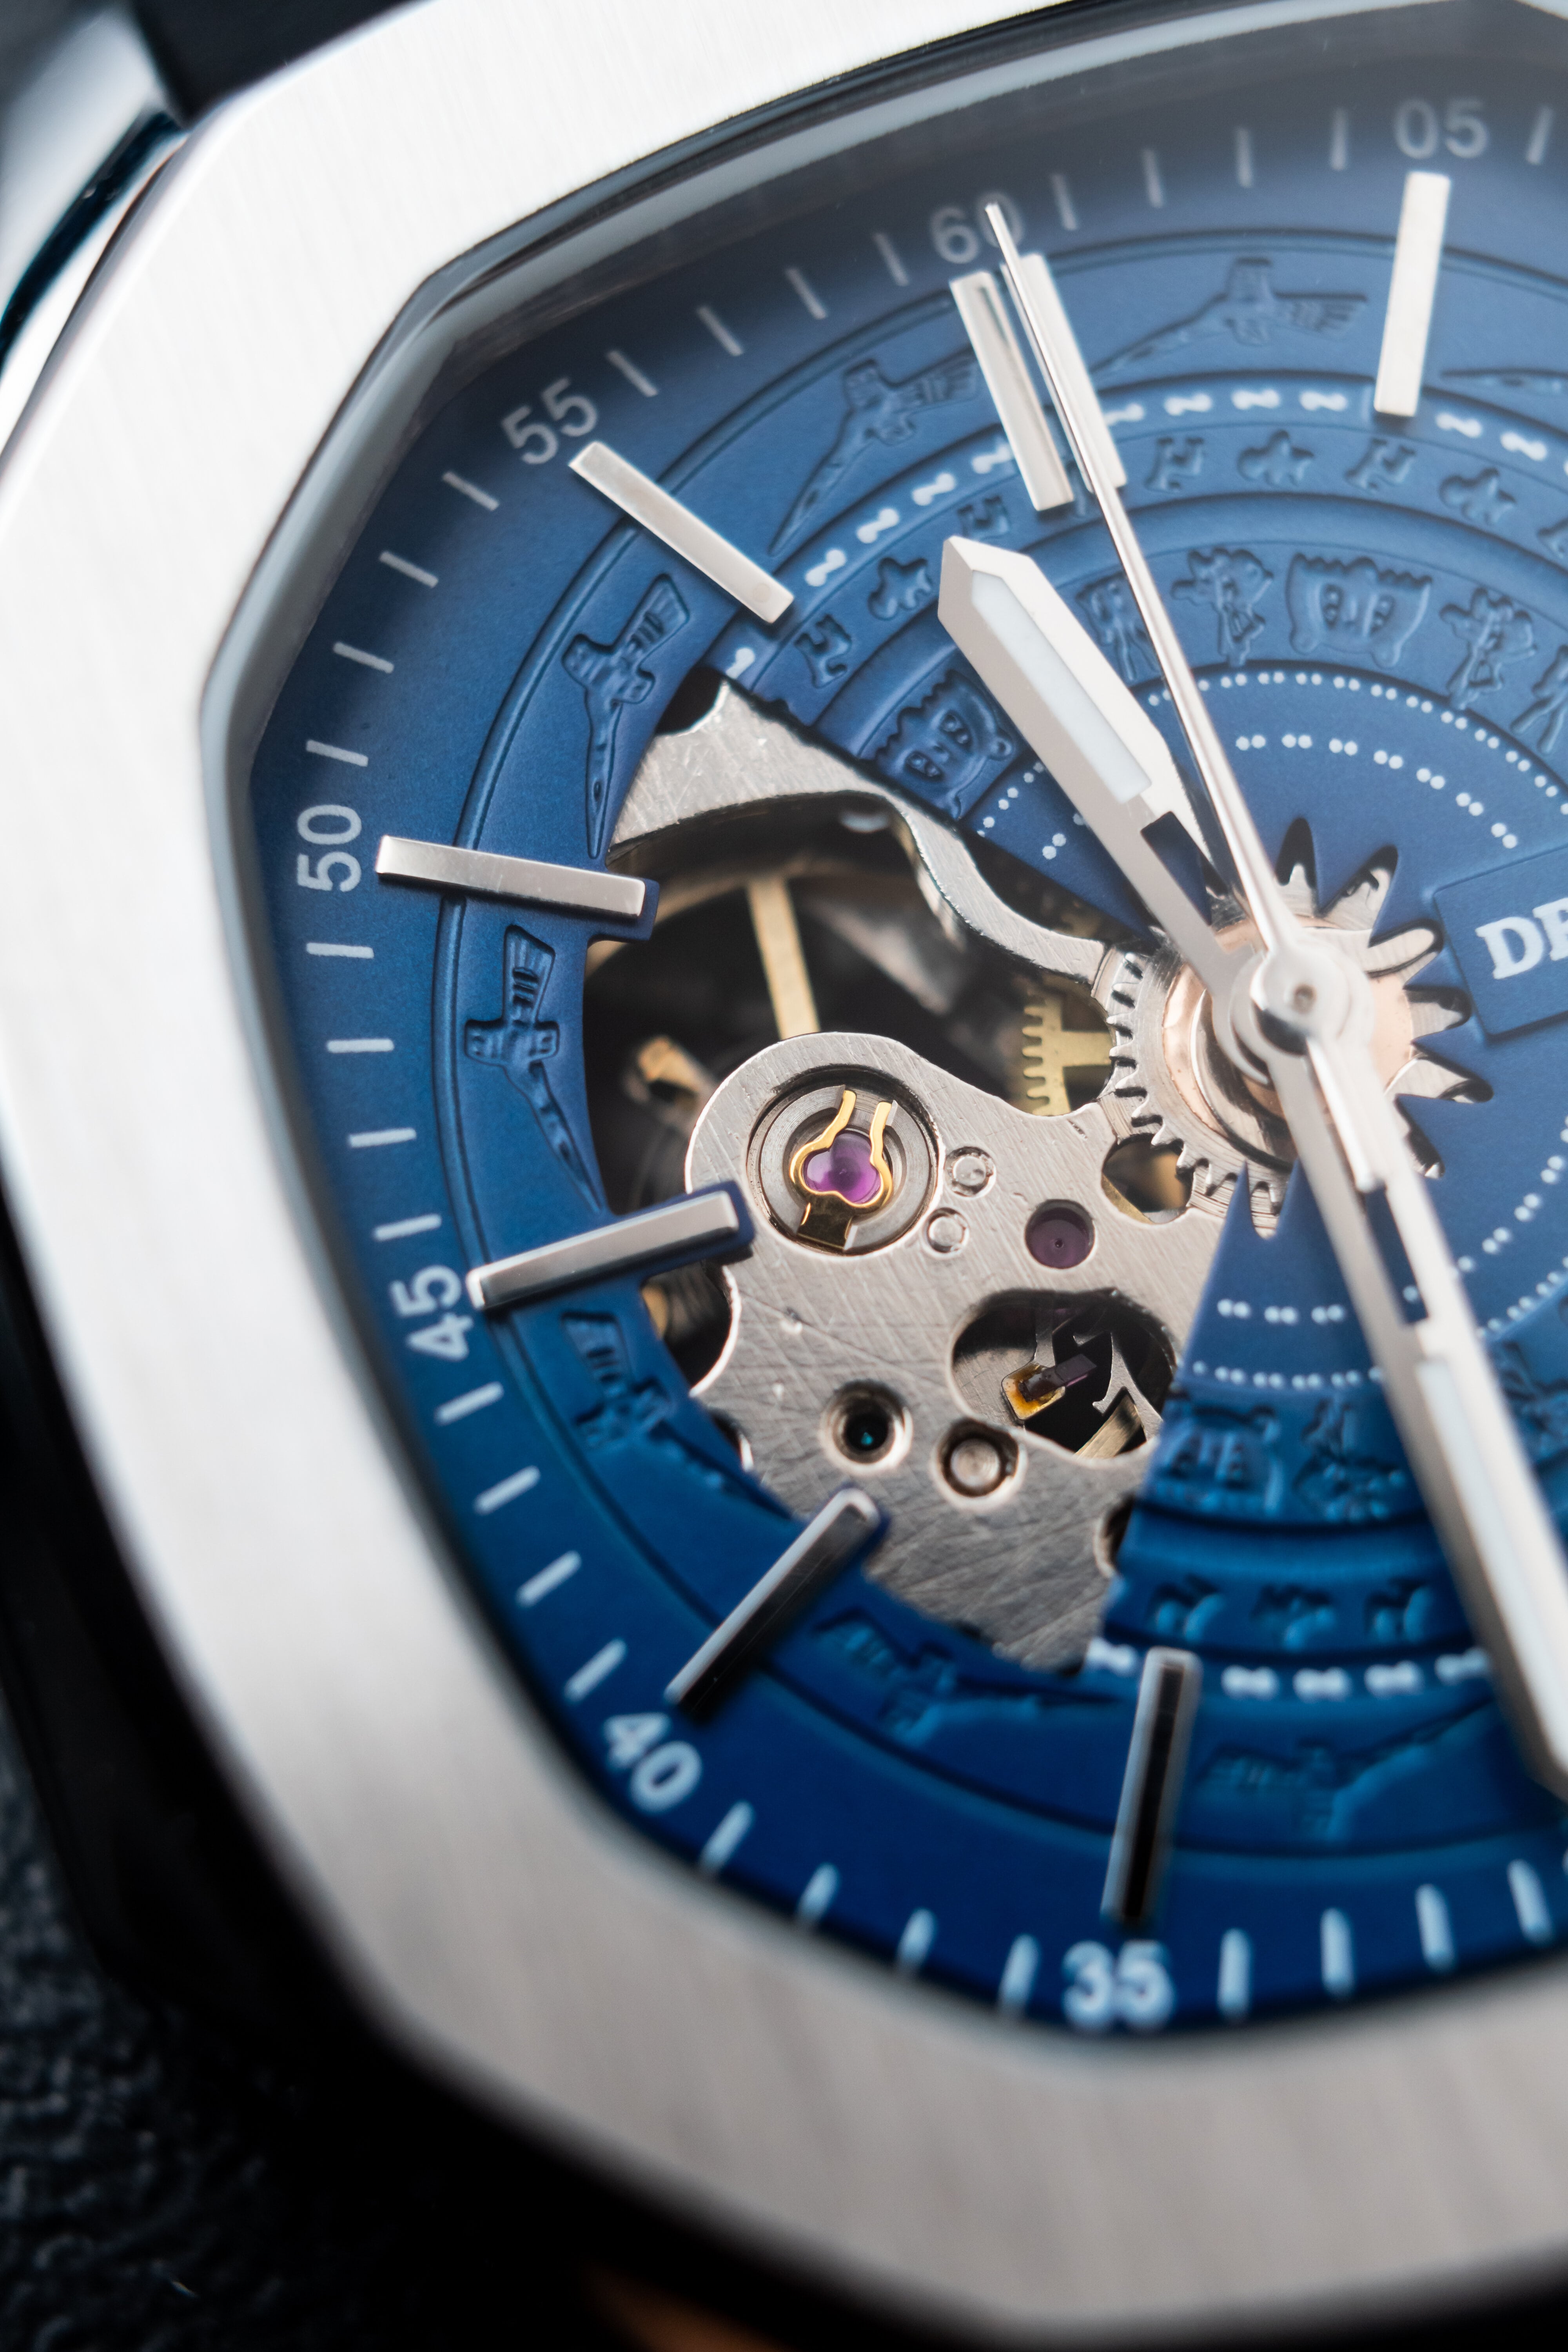 Đồng hồ nam Draco D23-DS68 “DongSon” Automatic trắng xanh kết hợp chất liệu dây thép không gỉ màu bạc-thời trang nam thể thao